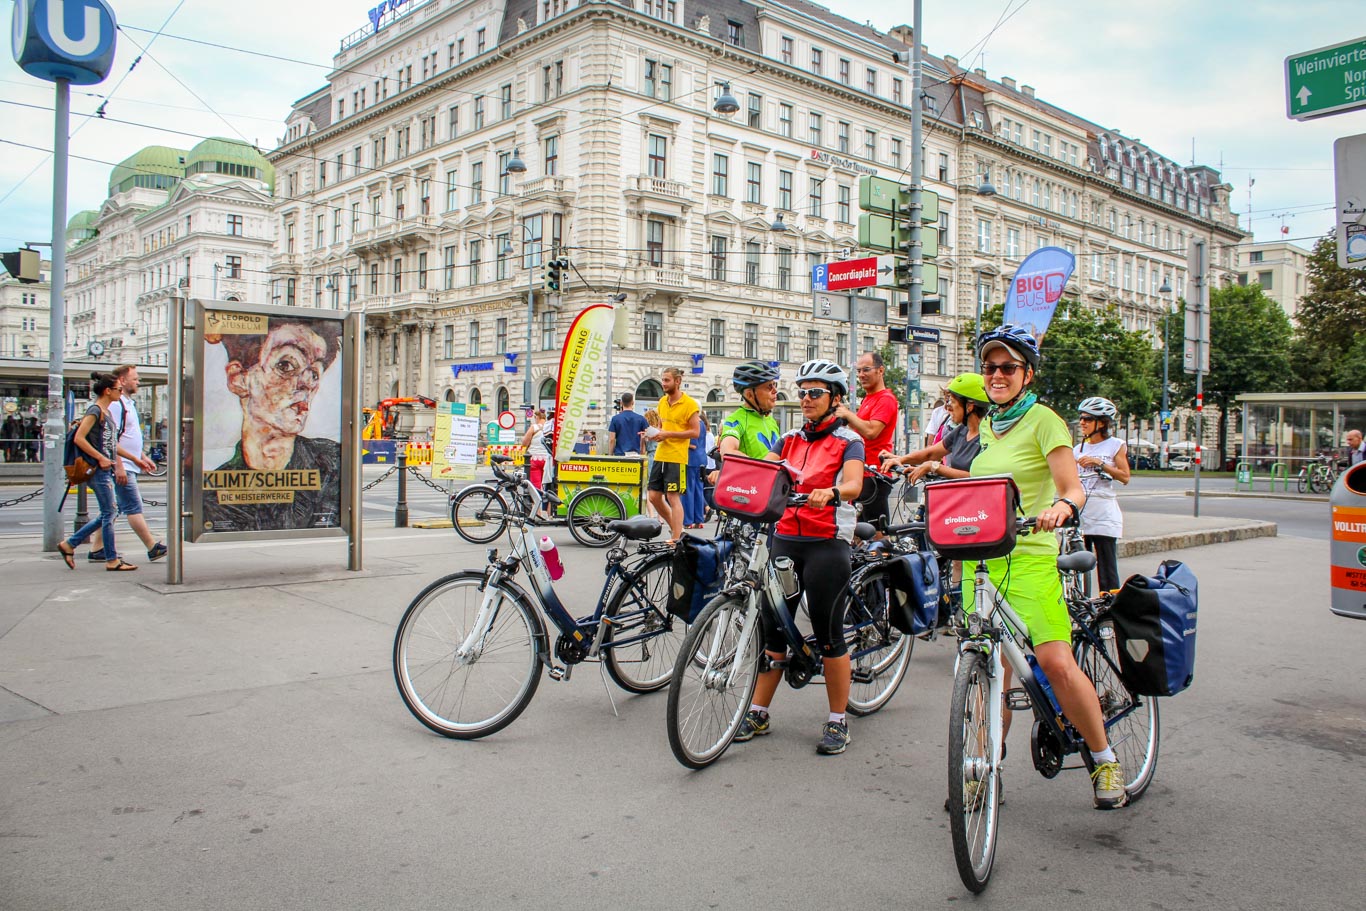 Vienna in bici